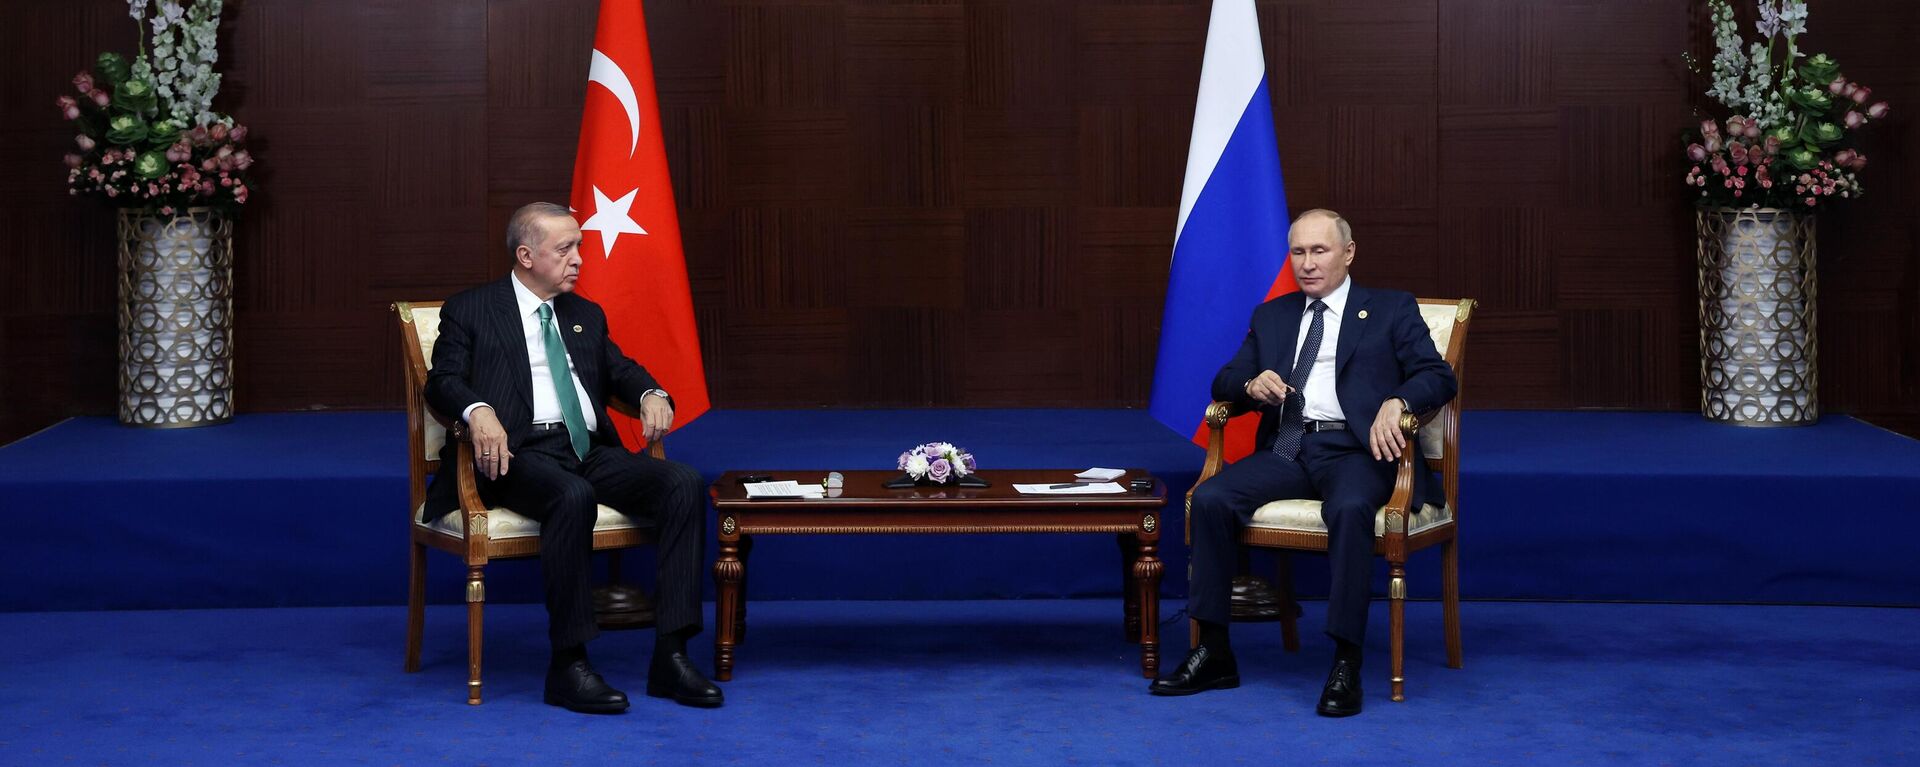 Presidente russo, Vladimir Putin, e o presidente turco, Recep Tayyip Erdogan, durante reunião em Astana, Cazaquistão, 13 de outubro de 2022 - Sputnik Brasil, 1920, 13.10.2022